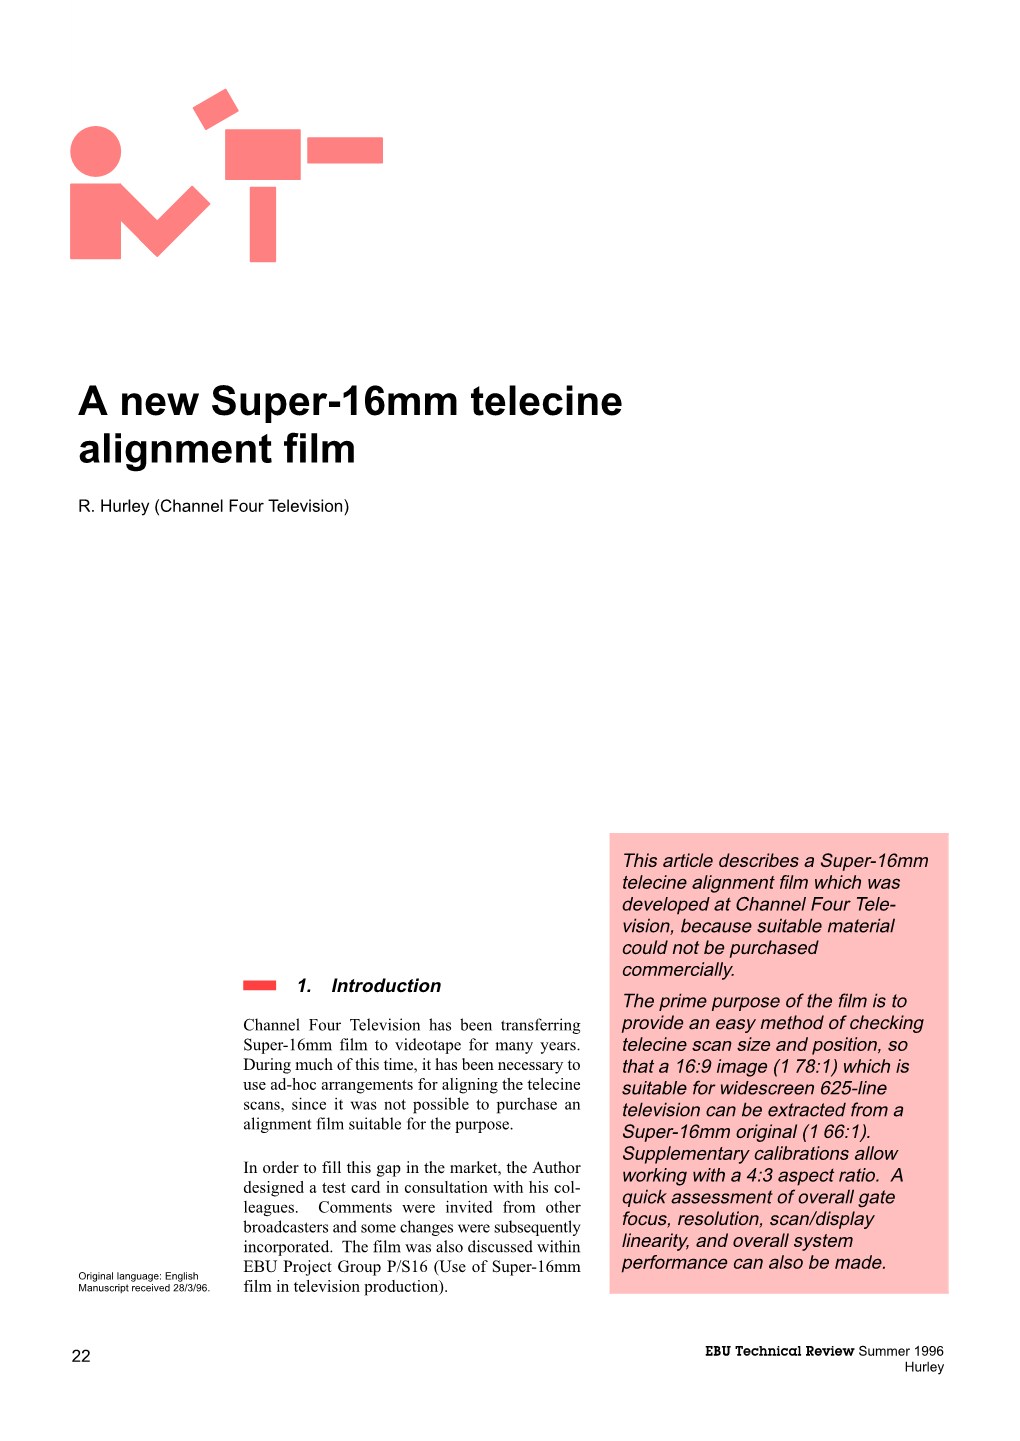 A New Super-16Mm Telecine Alignment Film